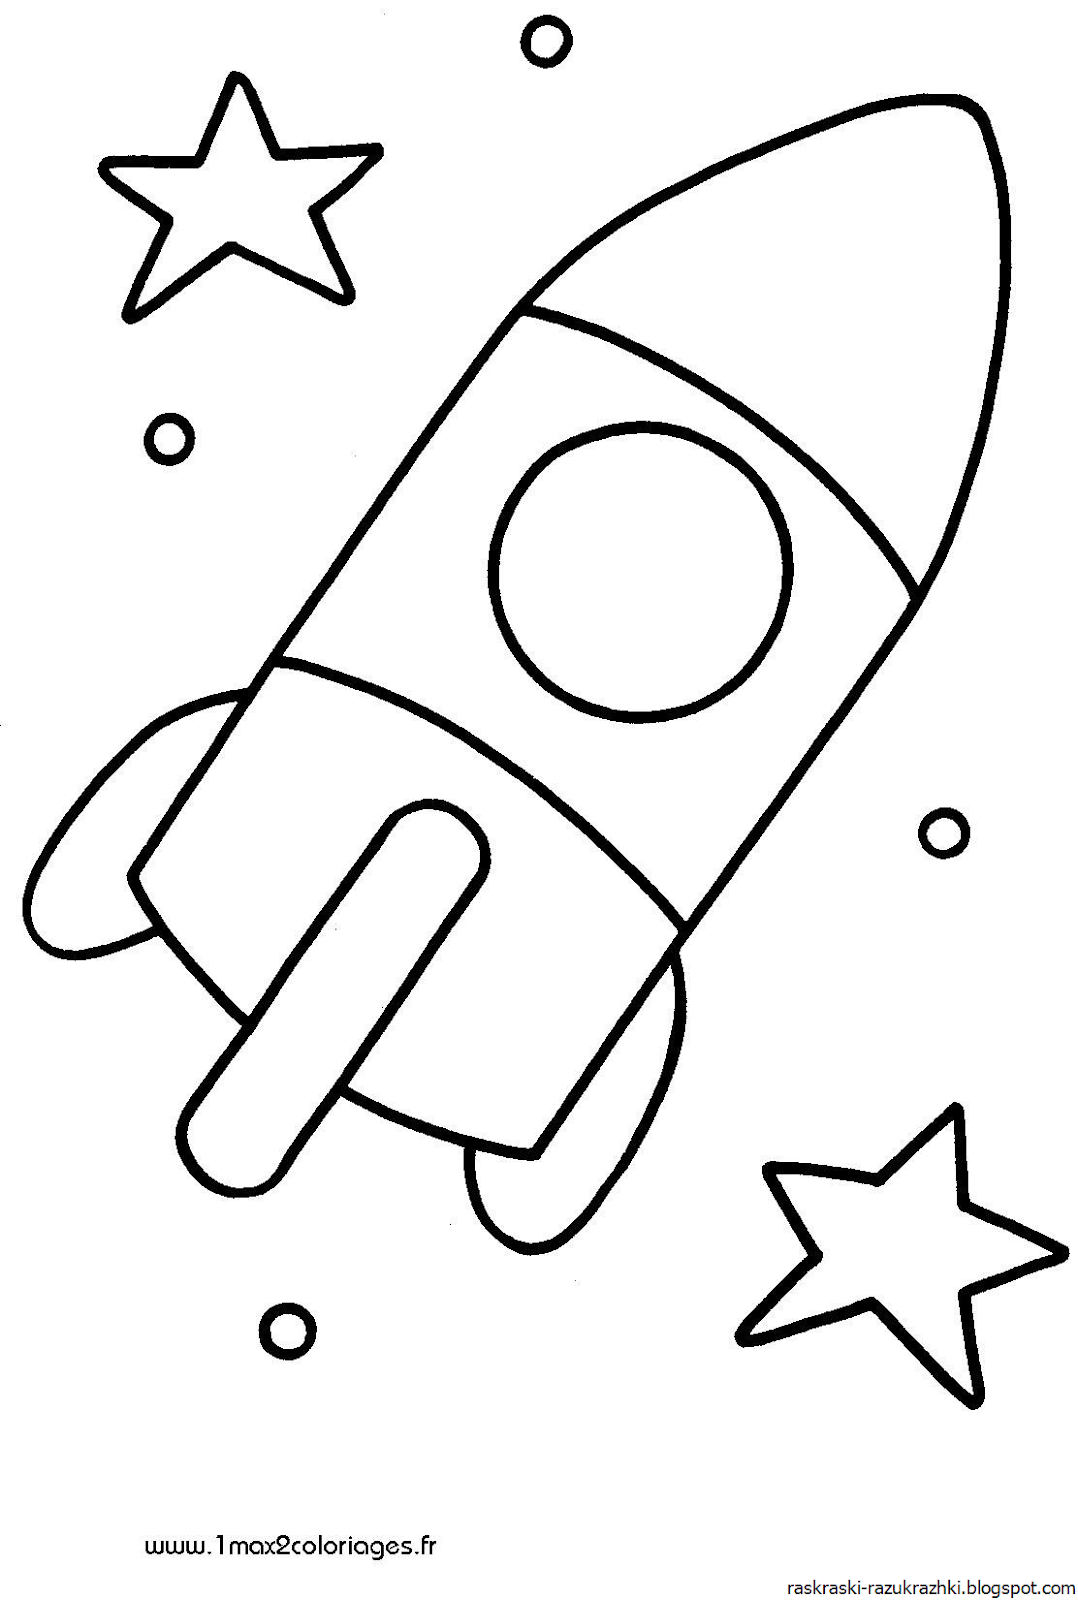 Зымыран раскраска. Ракета раскраска. Ракета раскраска для малышей. Раскраски на тему космос для детей 3-4 лет. Раскраска для малышей. Космос.